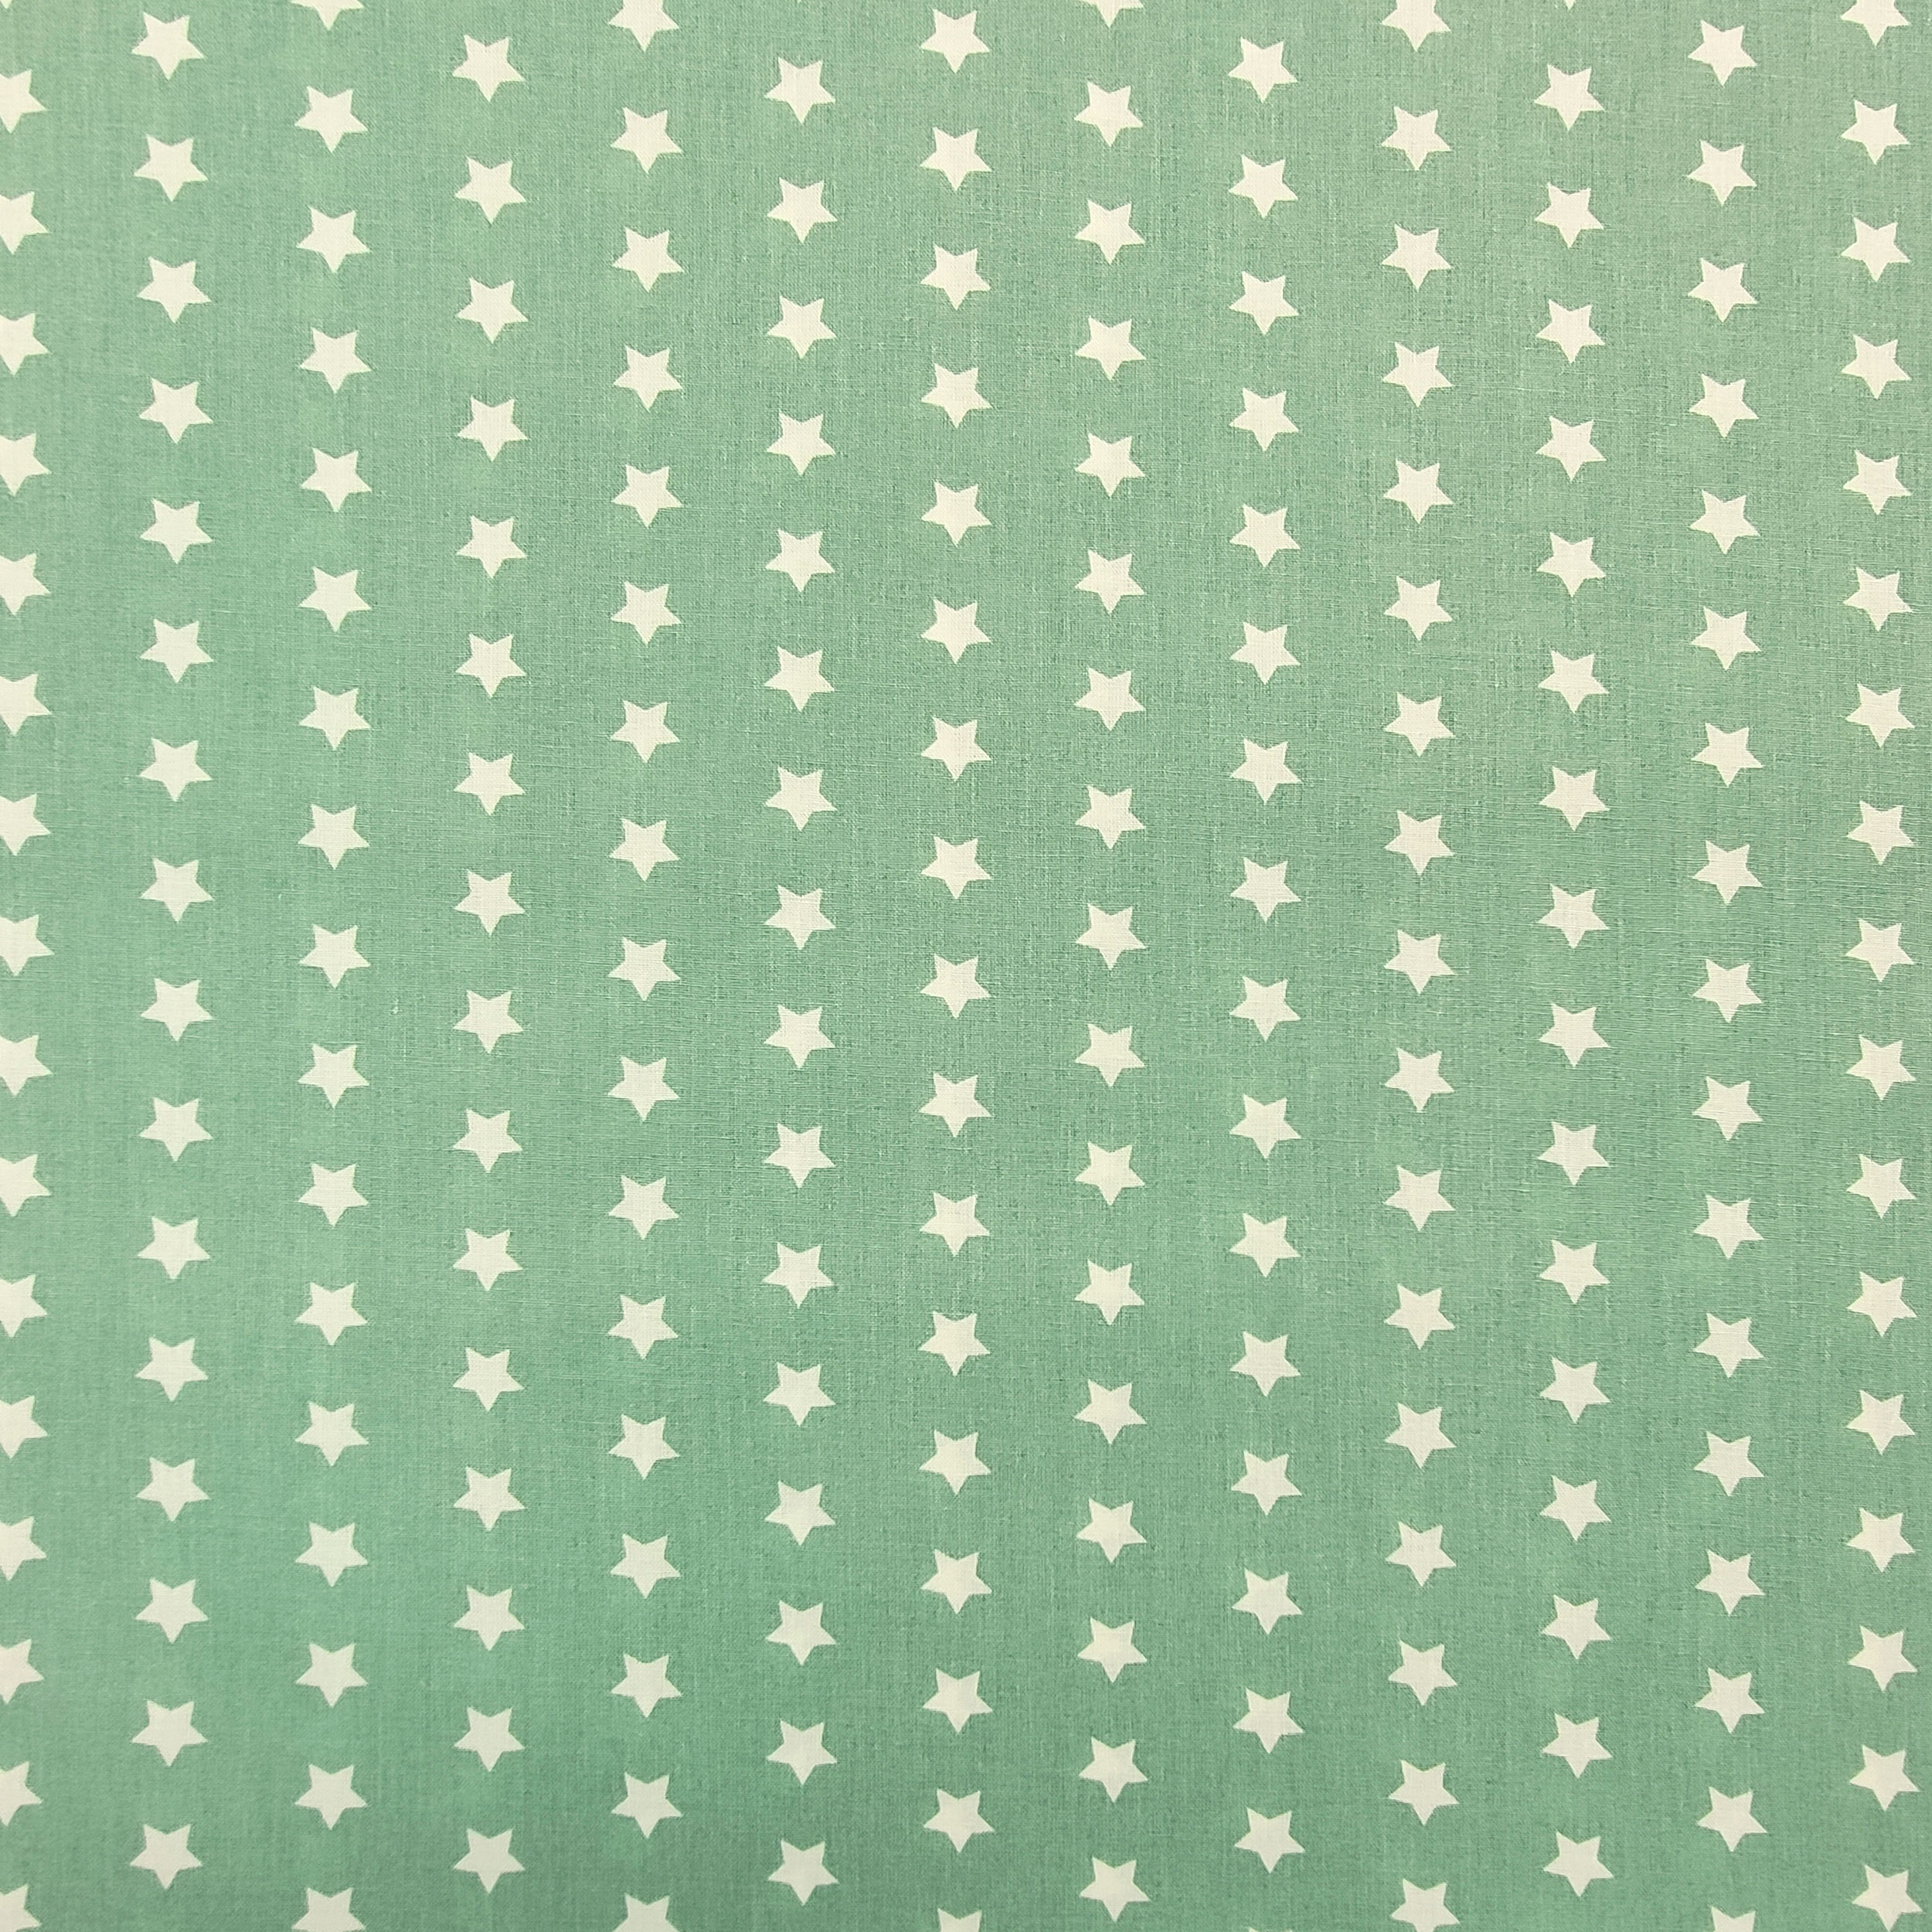 cotone sfondo verde marino stelle bianche